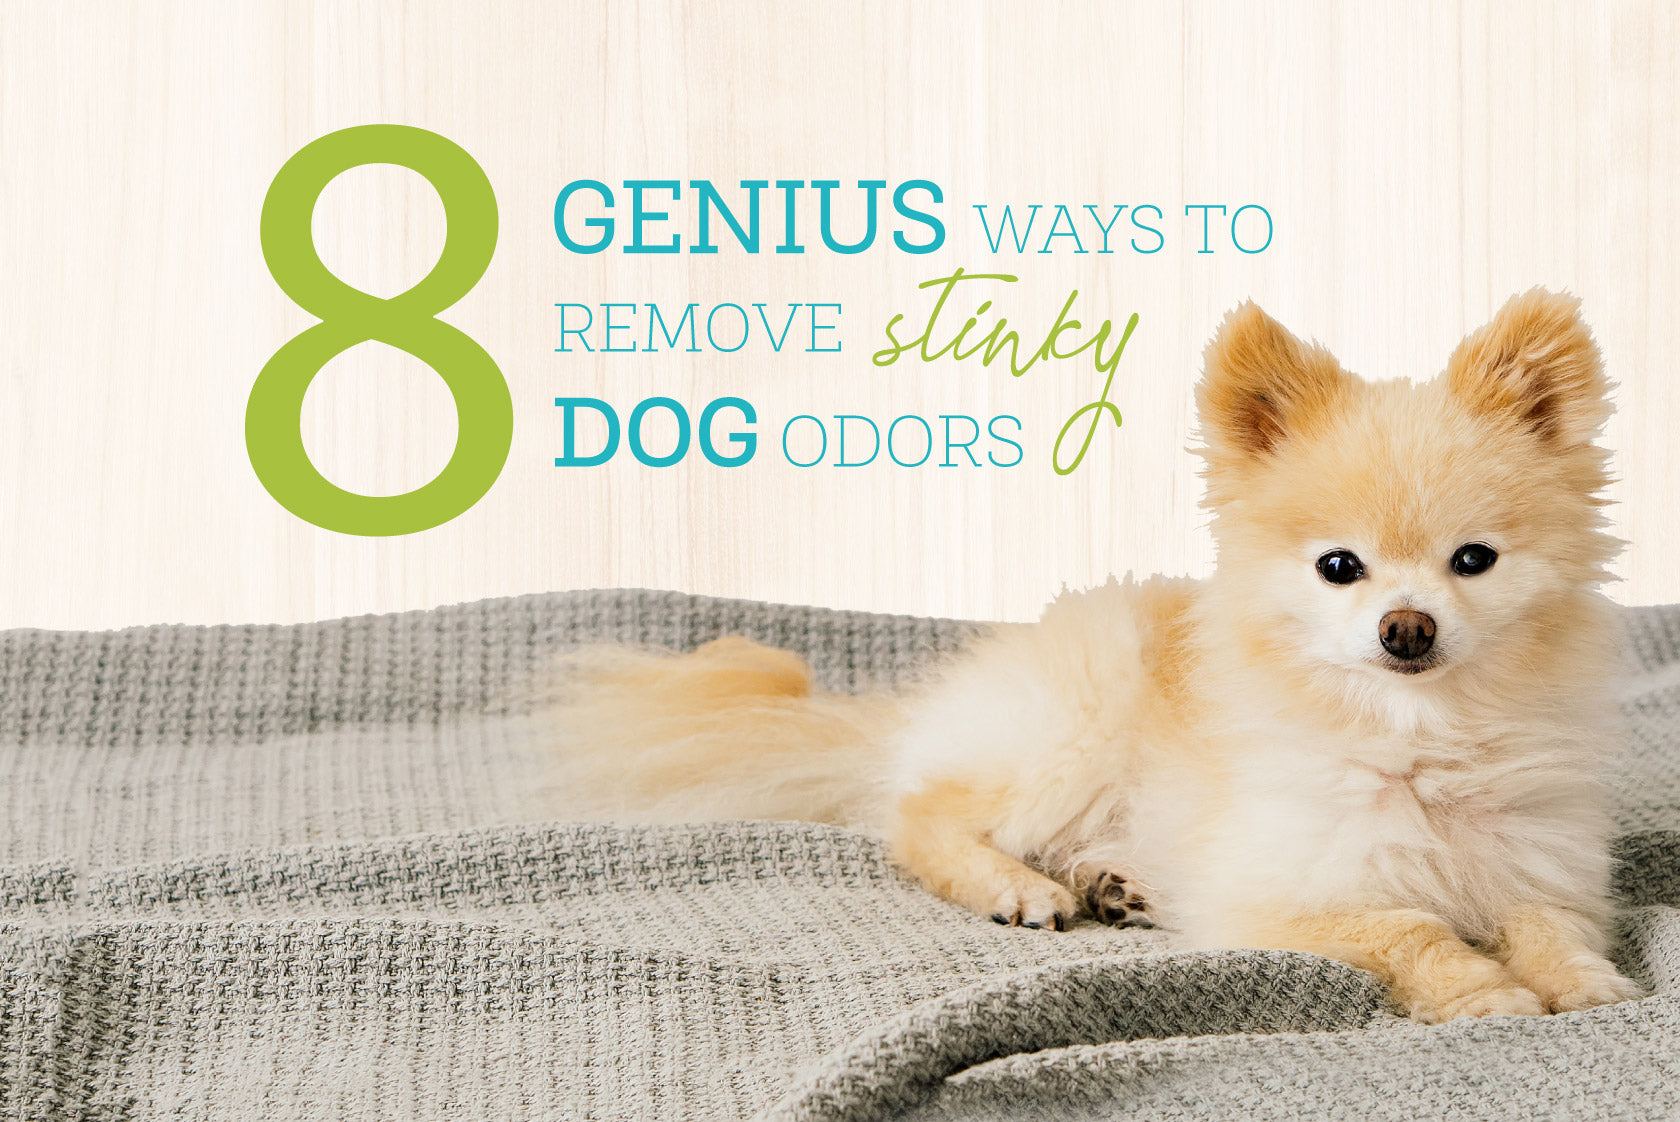 Oxyfresh - 8 Genius Ways To Remove Stinky Dog Odors